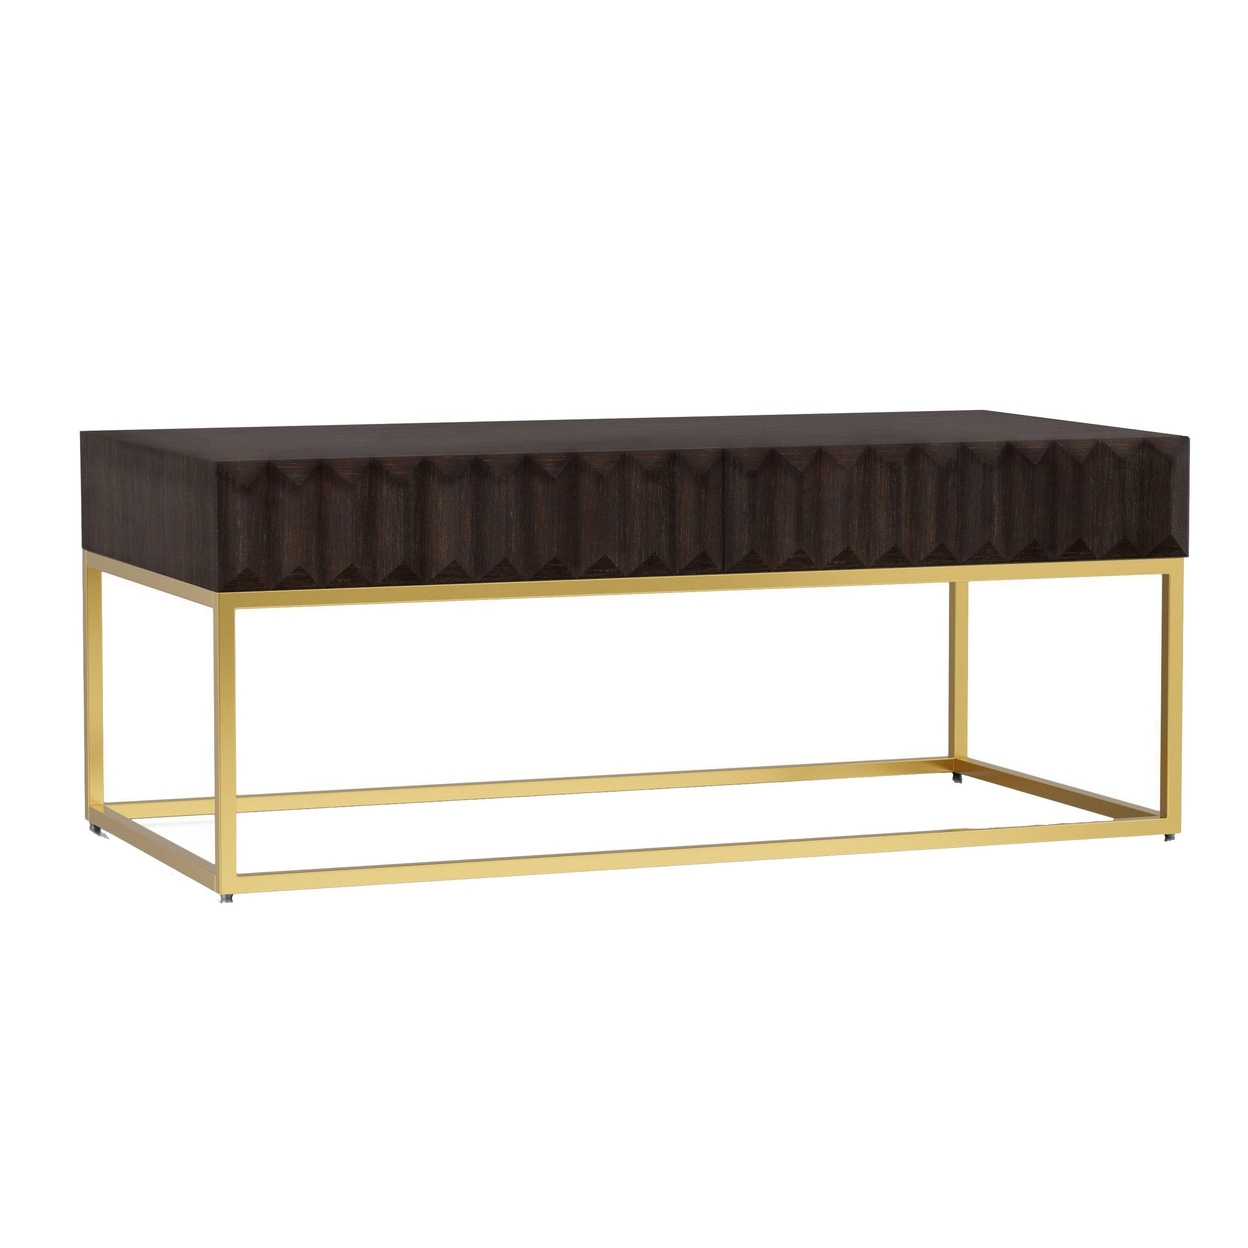 Bran 48 Inch Rectangular Coffee Table, Brown Wood, Gold Base, 2 Drawers- Saltoro Sherpi